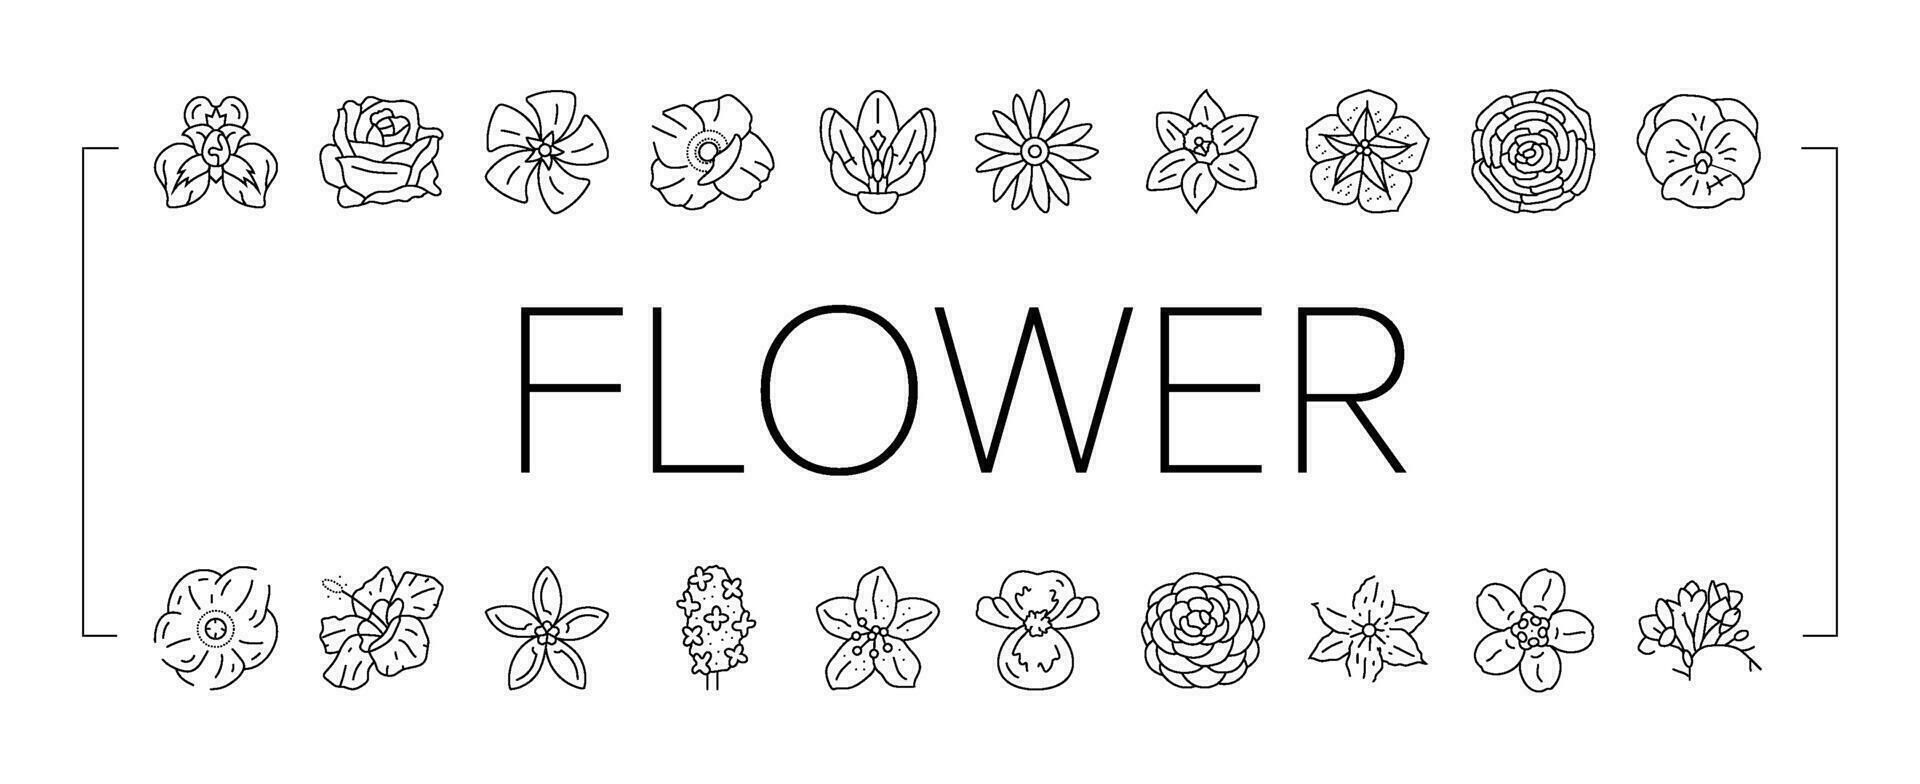 blomma blomma vår ikoner uppsättning vektor